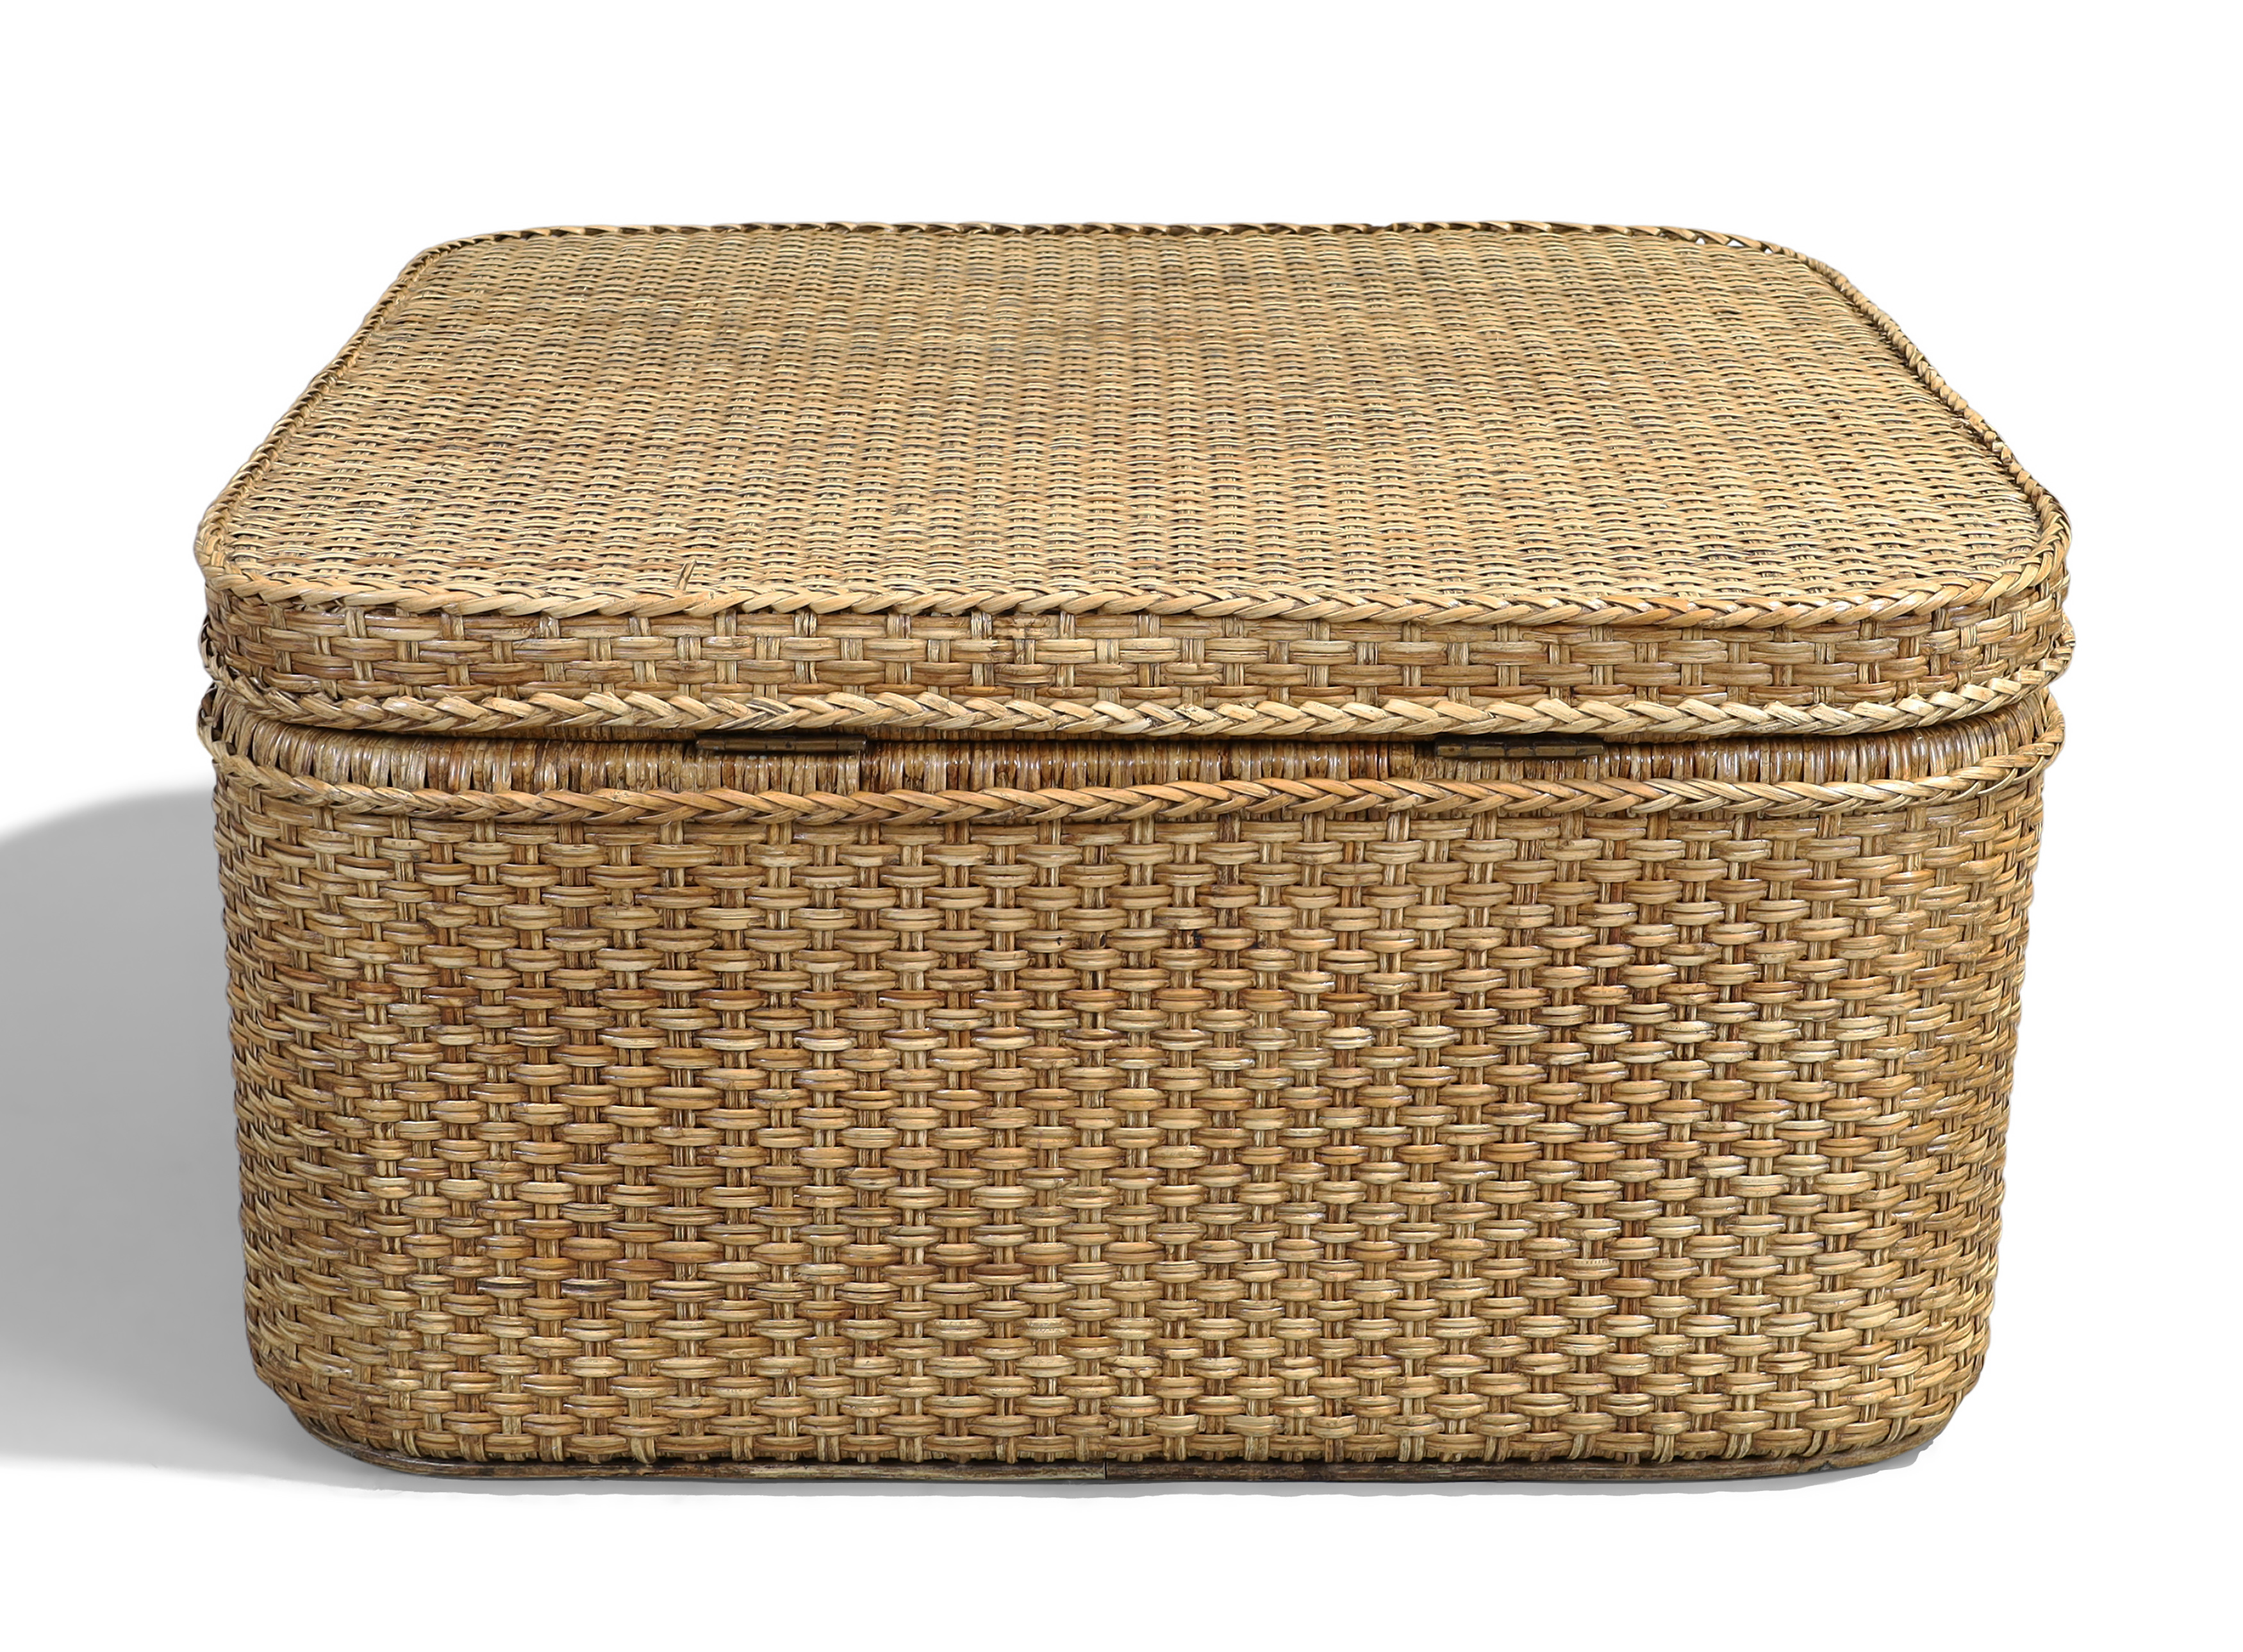 A Ralph Lauren wicker basket, 46cm high, 90cm wide, 90cm deep - Image 3 of 3